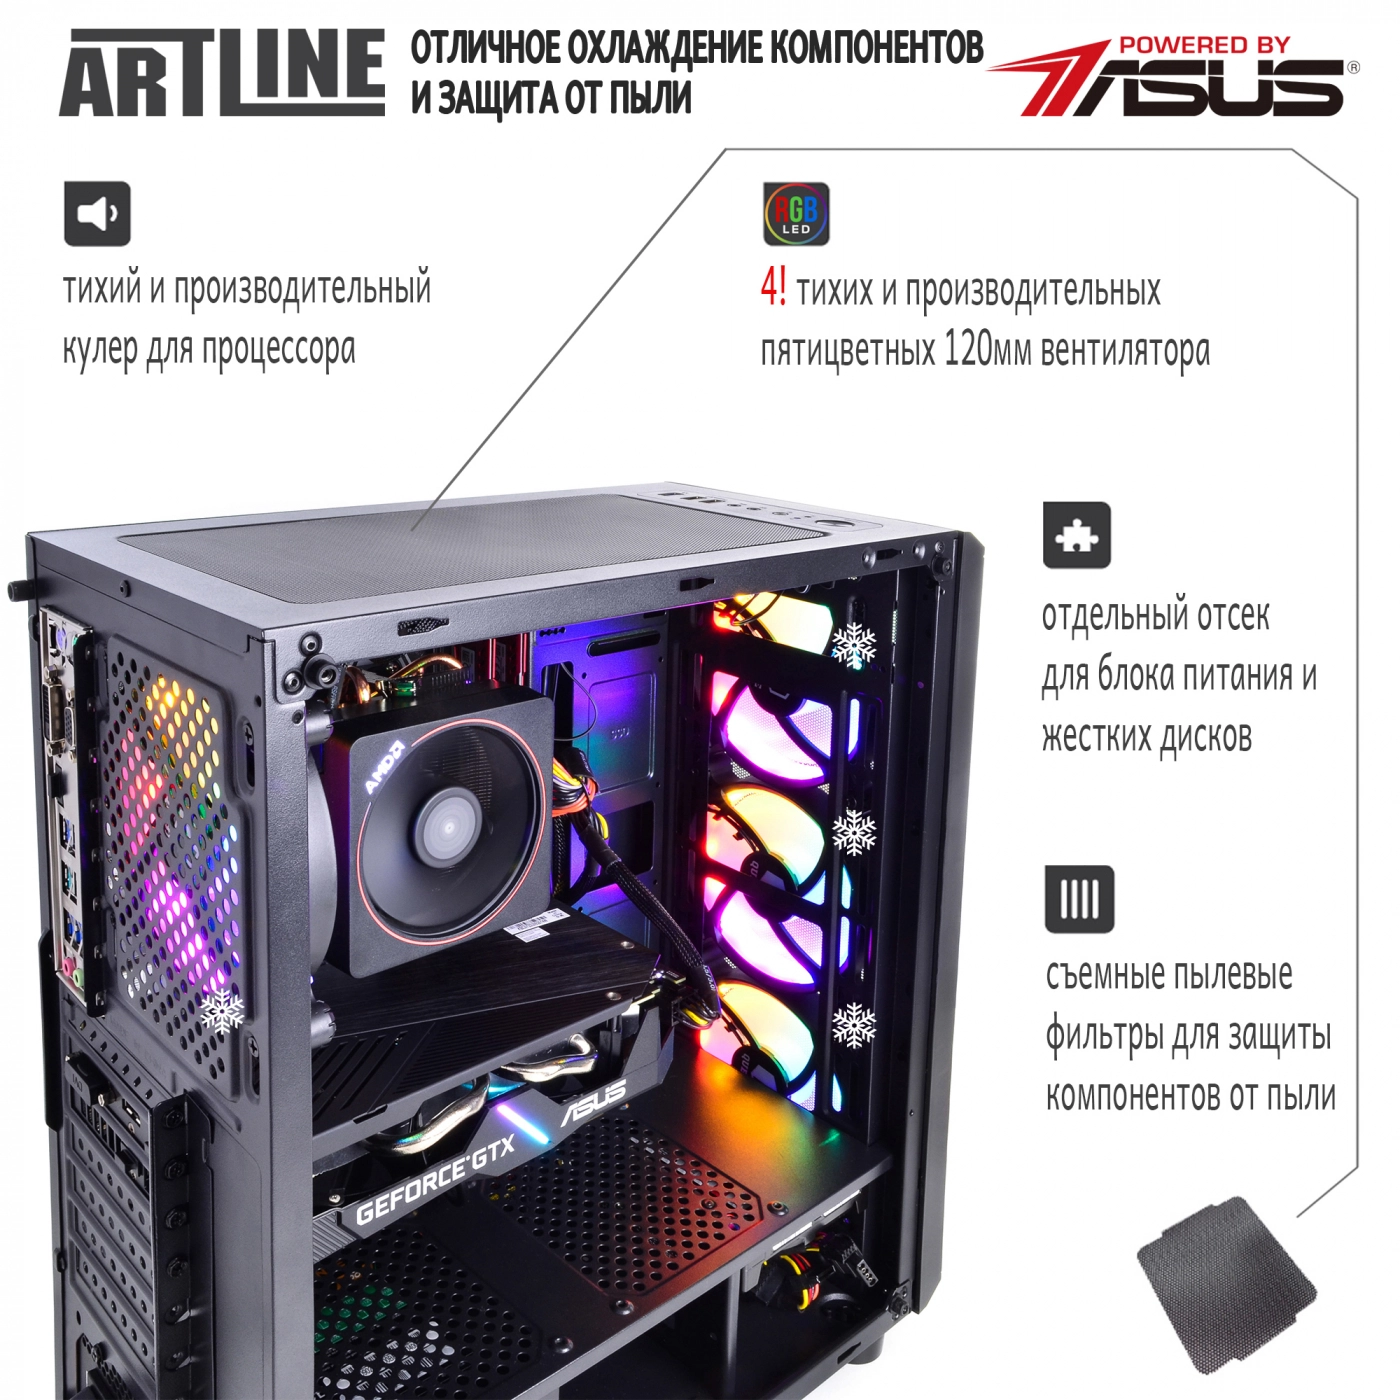 Купить Компьютер ARTLINE Gaming X66v11 - фото 3